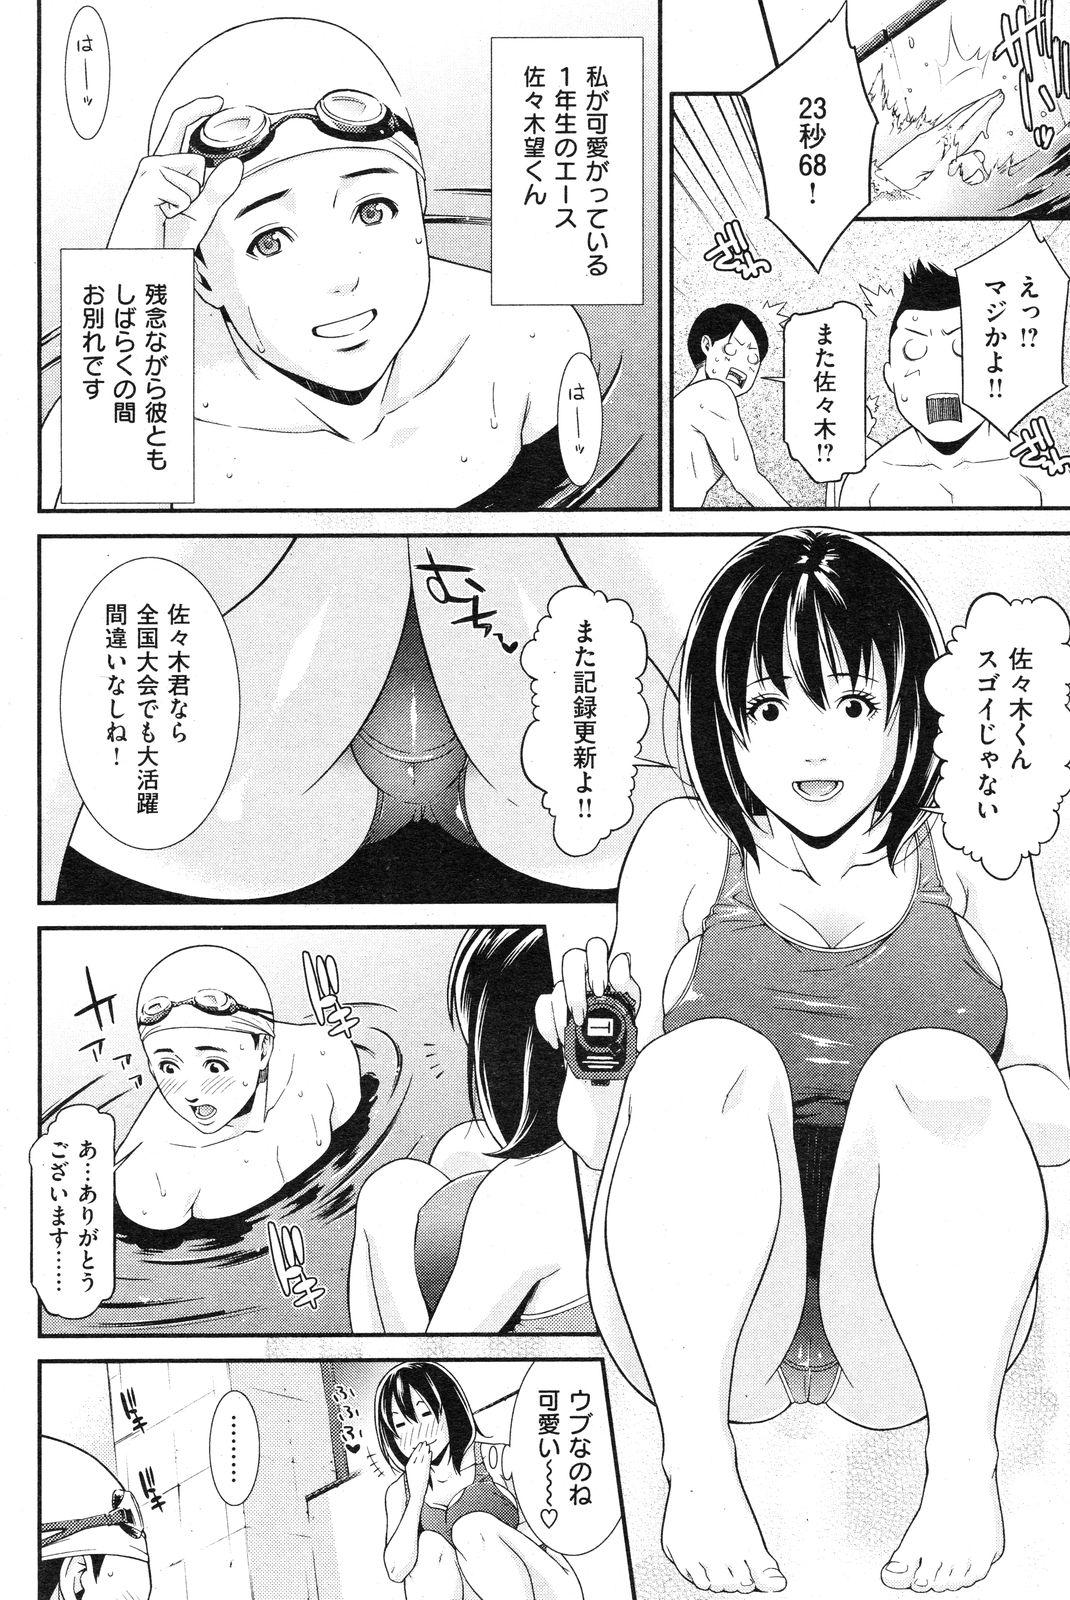 COMIC Shitsurakuten Vol.14 2012-08 106